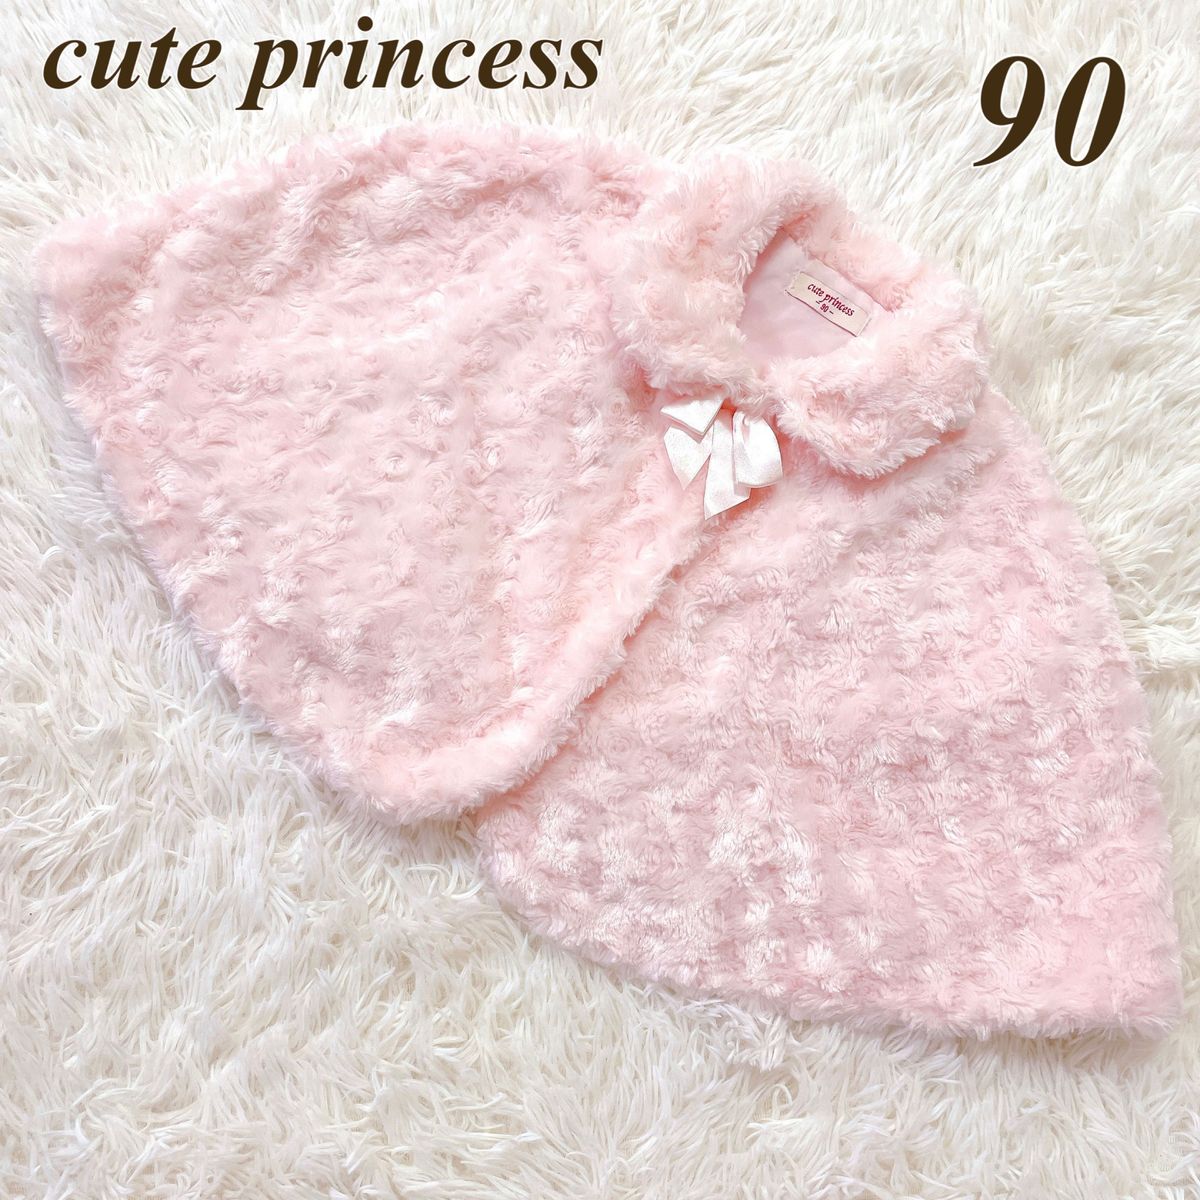 cute princess 90 ファーポンチョ ケープ 上着 防寒 ジャケット ベビー 赤ちゃん 80 子供服 キッズ 冬物